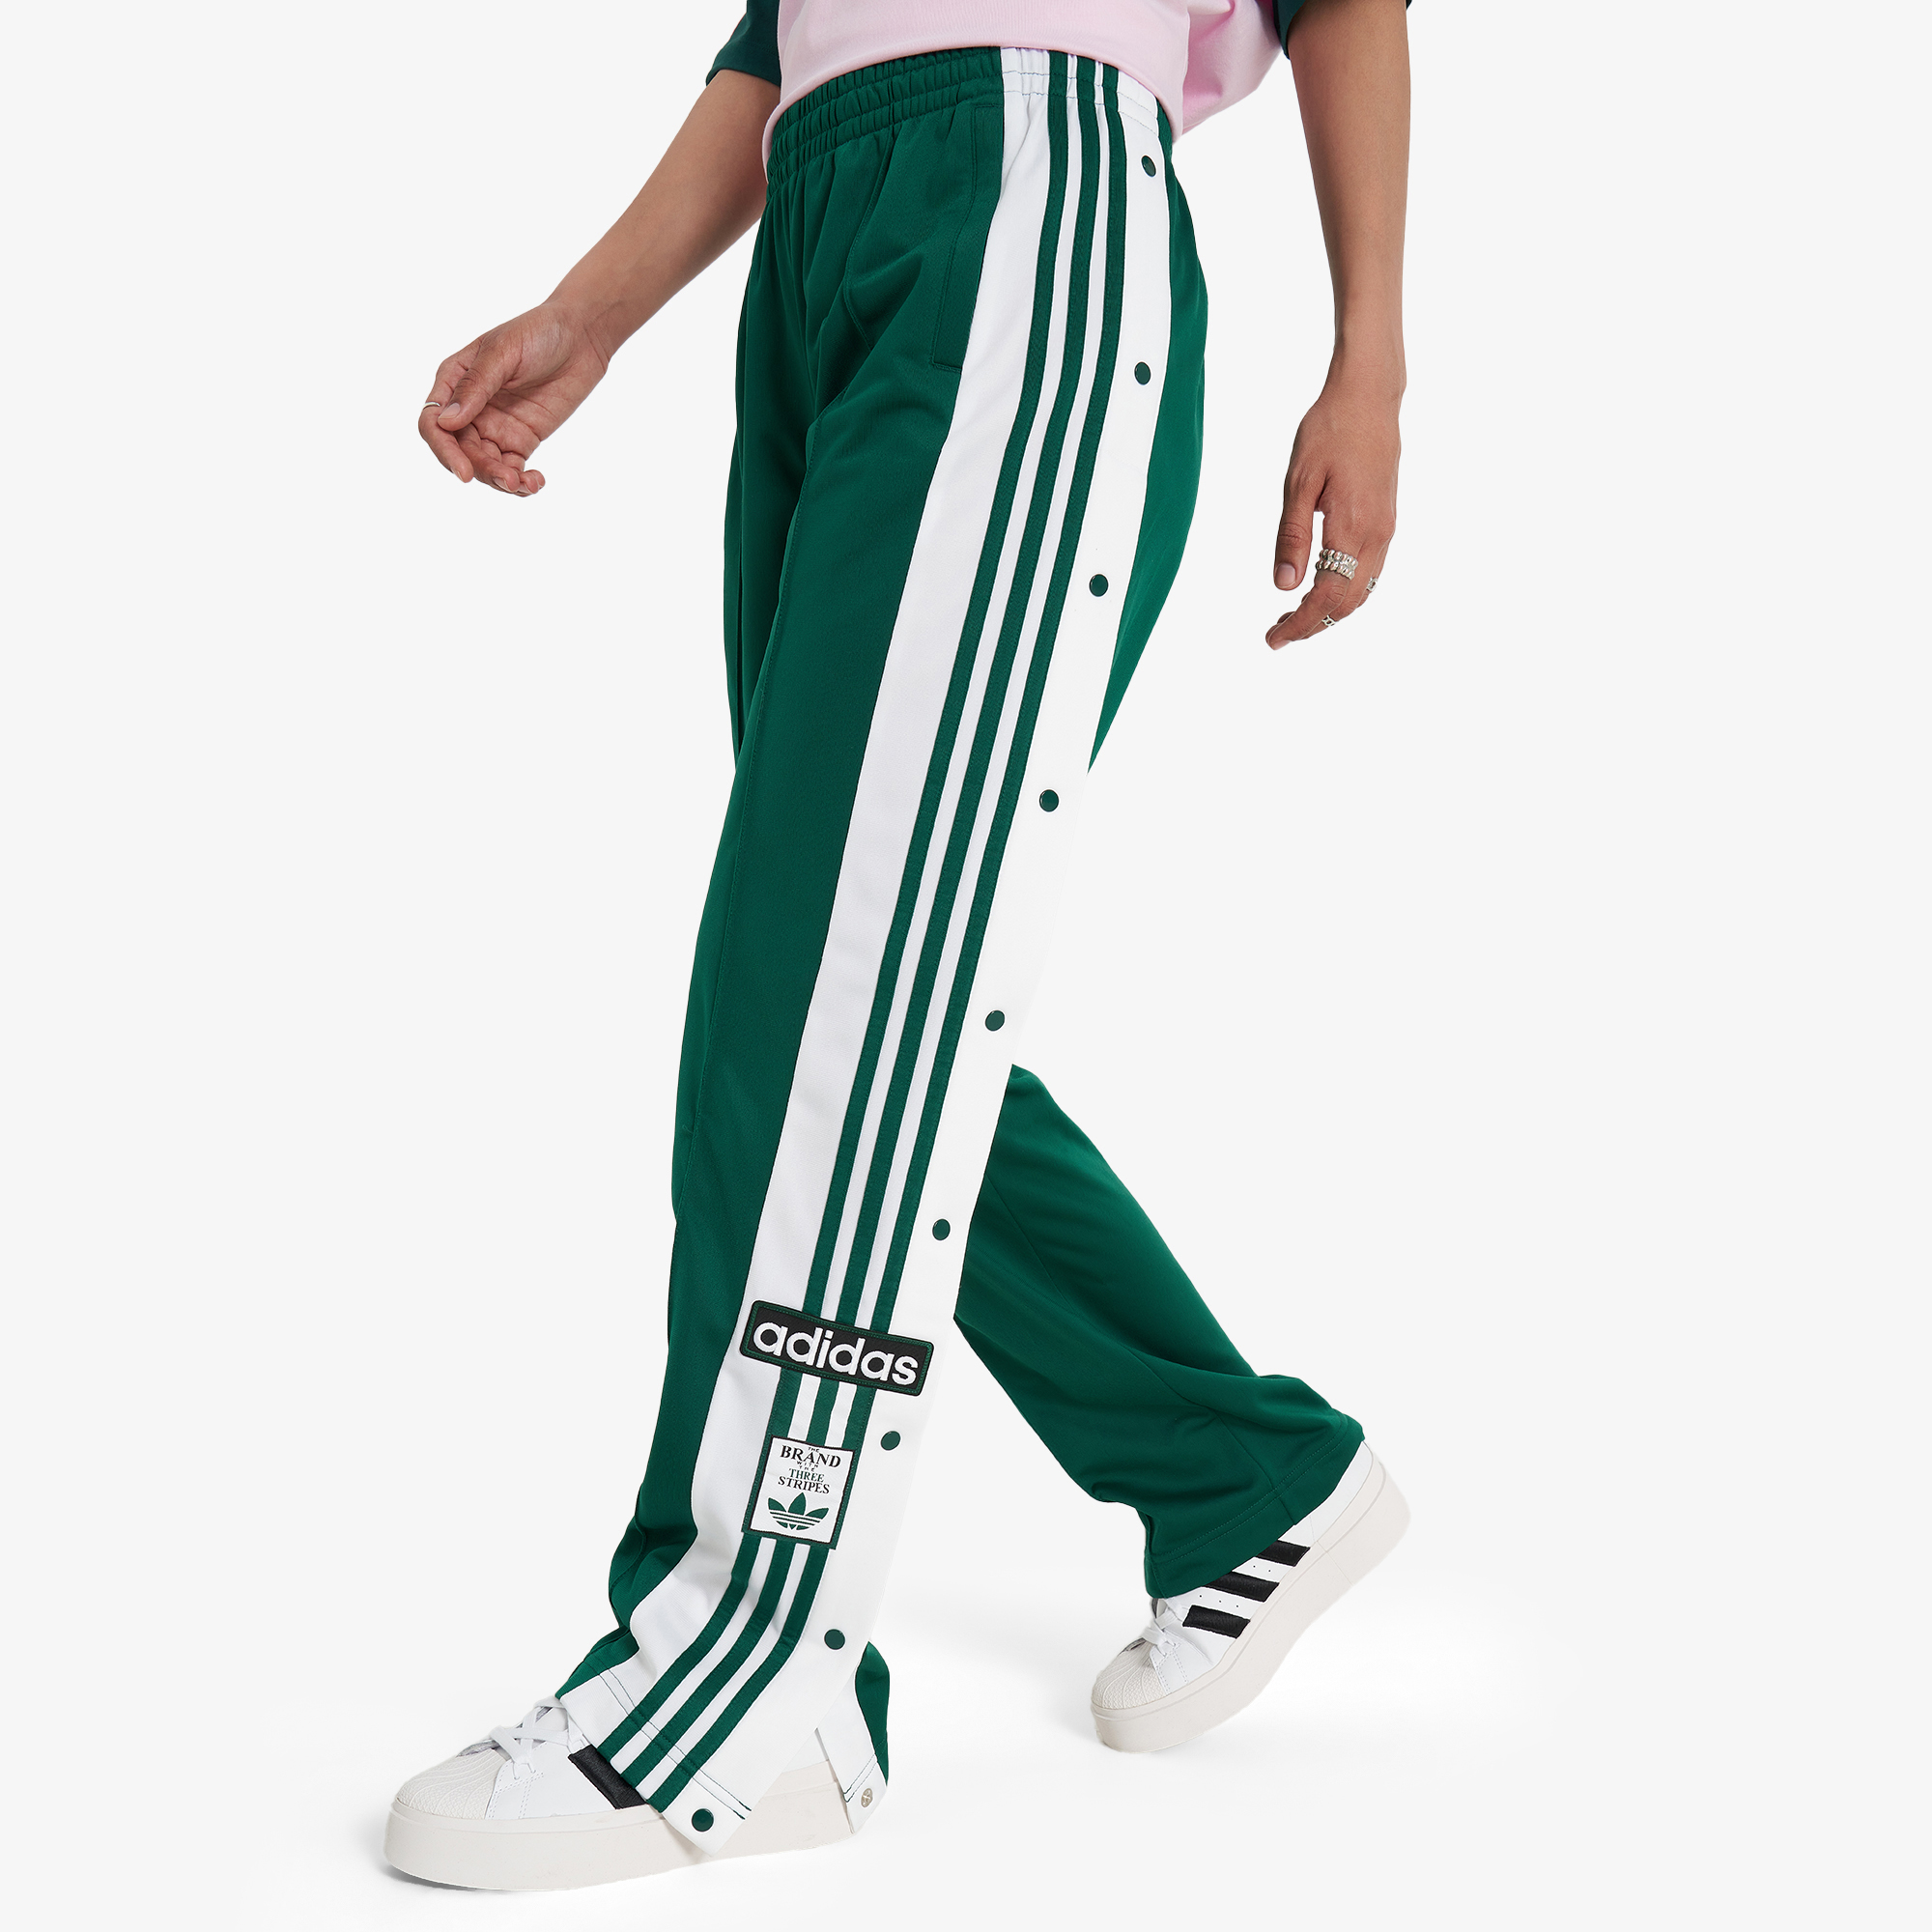 adidas Adibreak, Зеленый IP0623A01-, размер 46-48 - фото 2